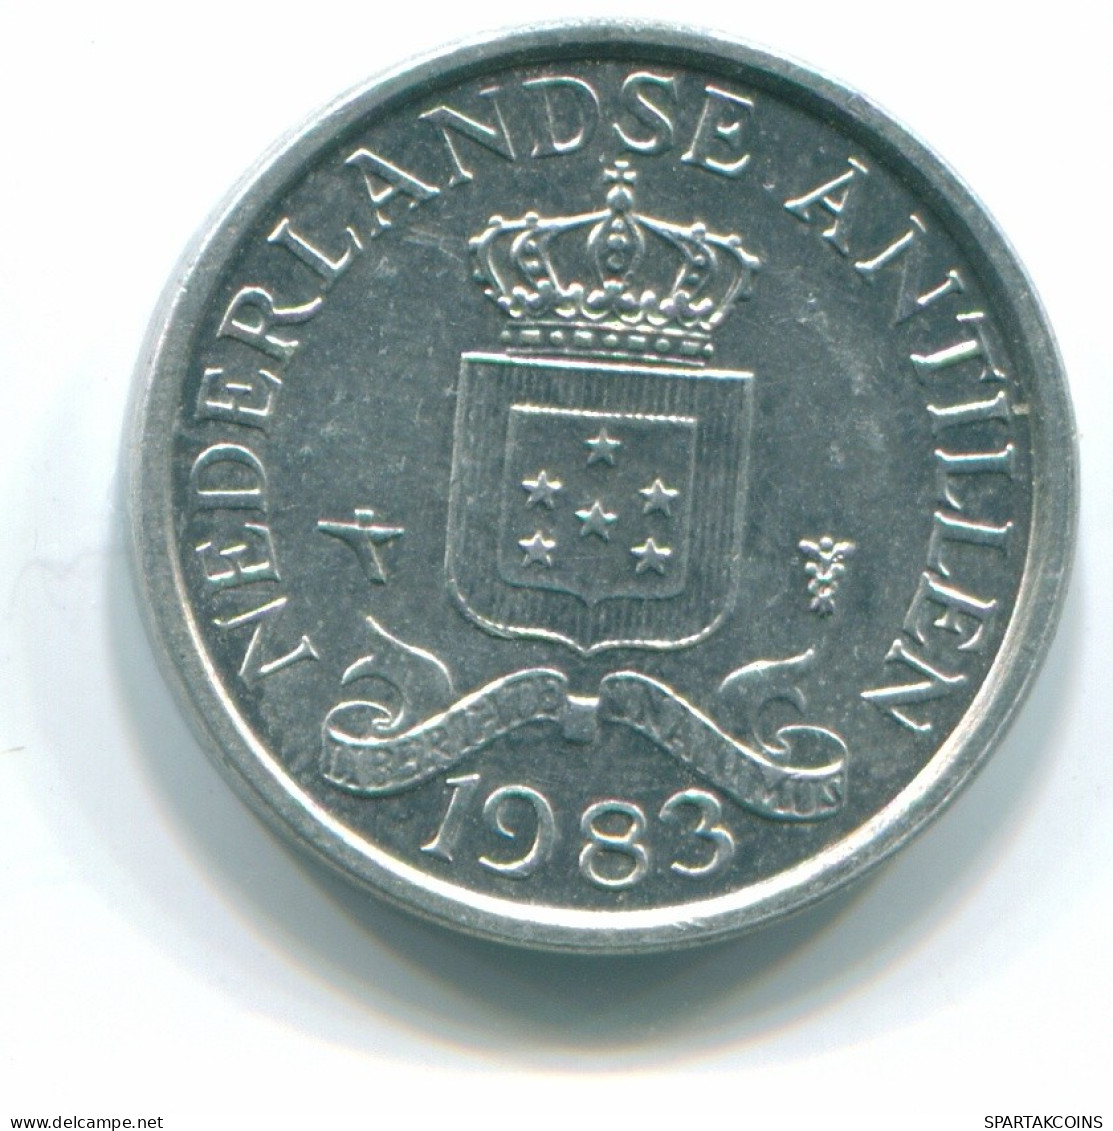 1 CENT 1983 NIEDERLÄNDISCHE ANTILLEN Aluminium Koloniale Münze #S11206.D.A - Netherlands Antilles